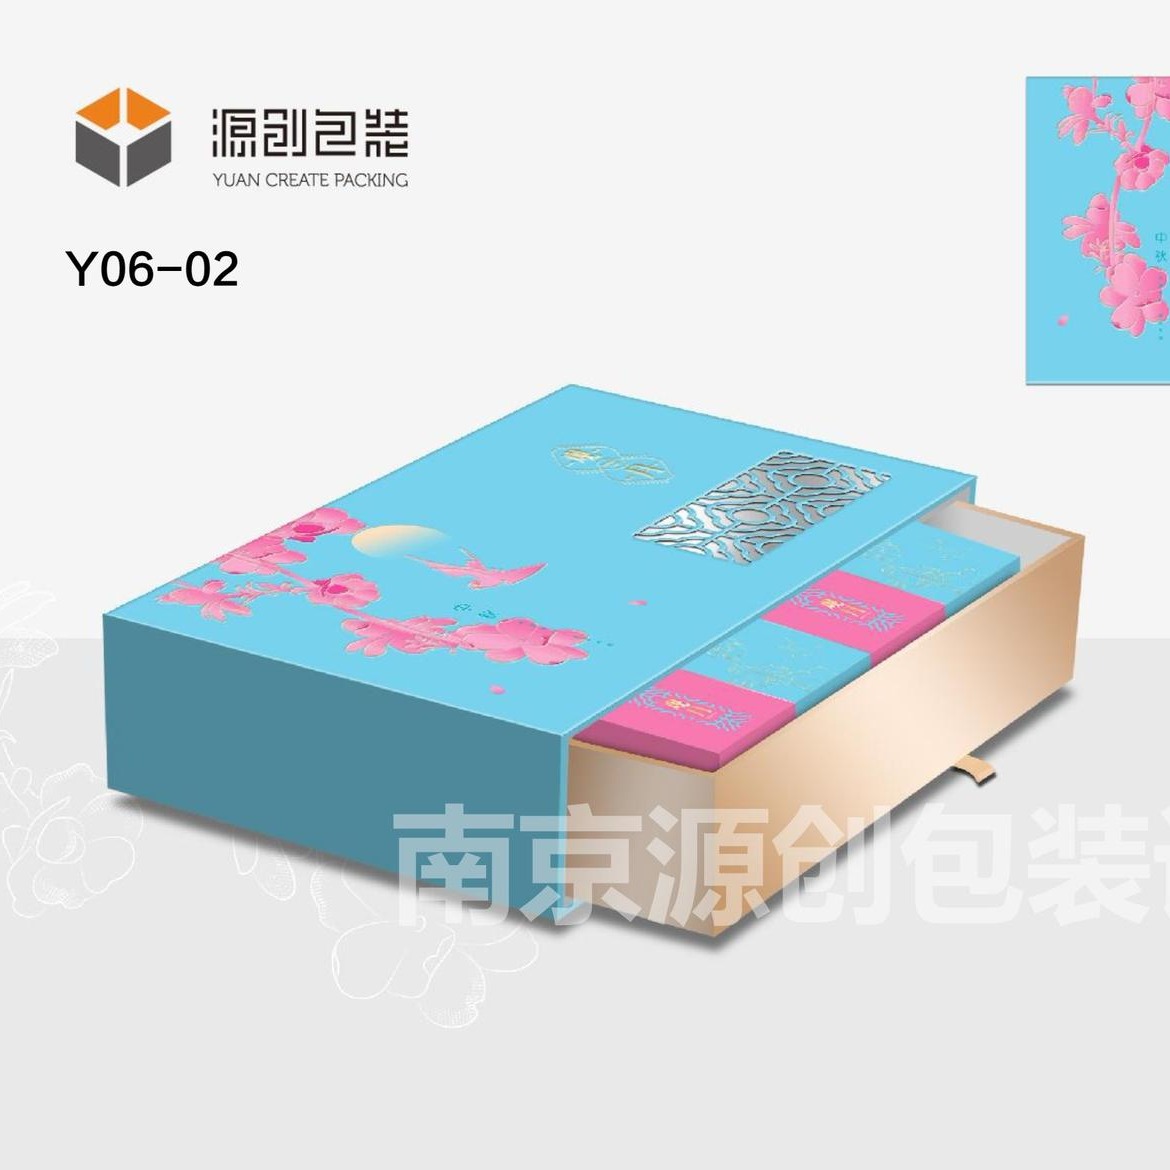 南京源创包装 月饼礼盒生产制作 南京包装厂家 质量好 交货快